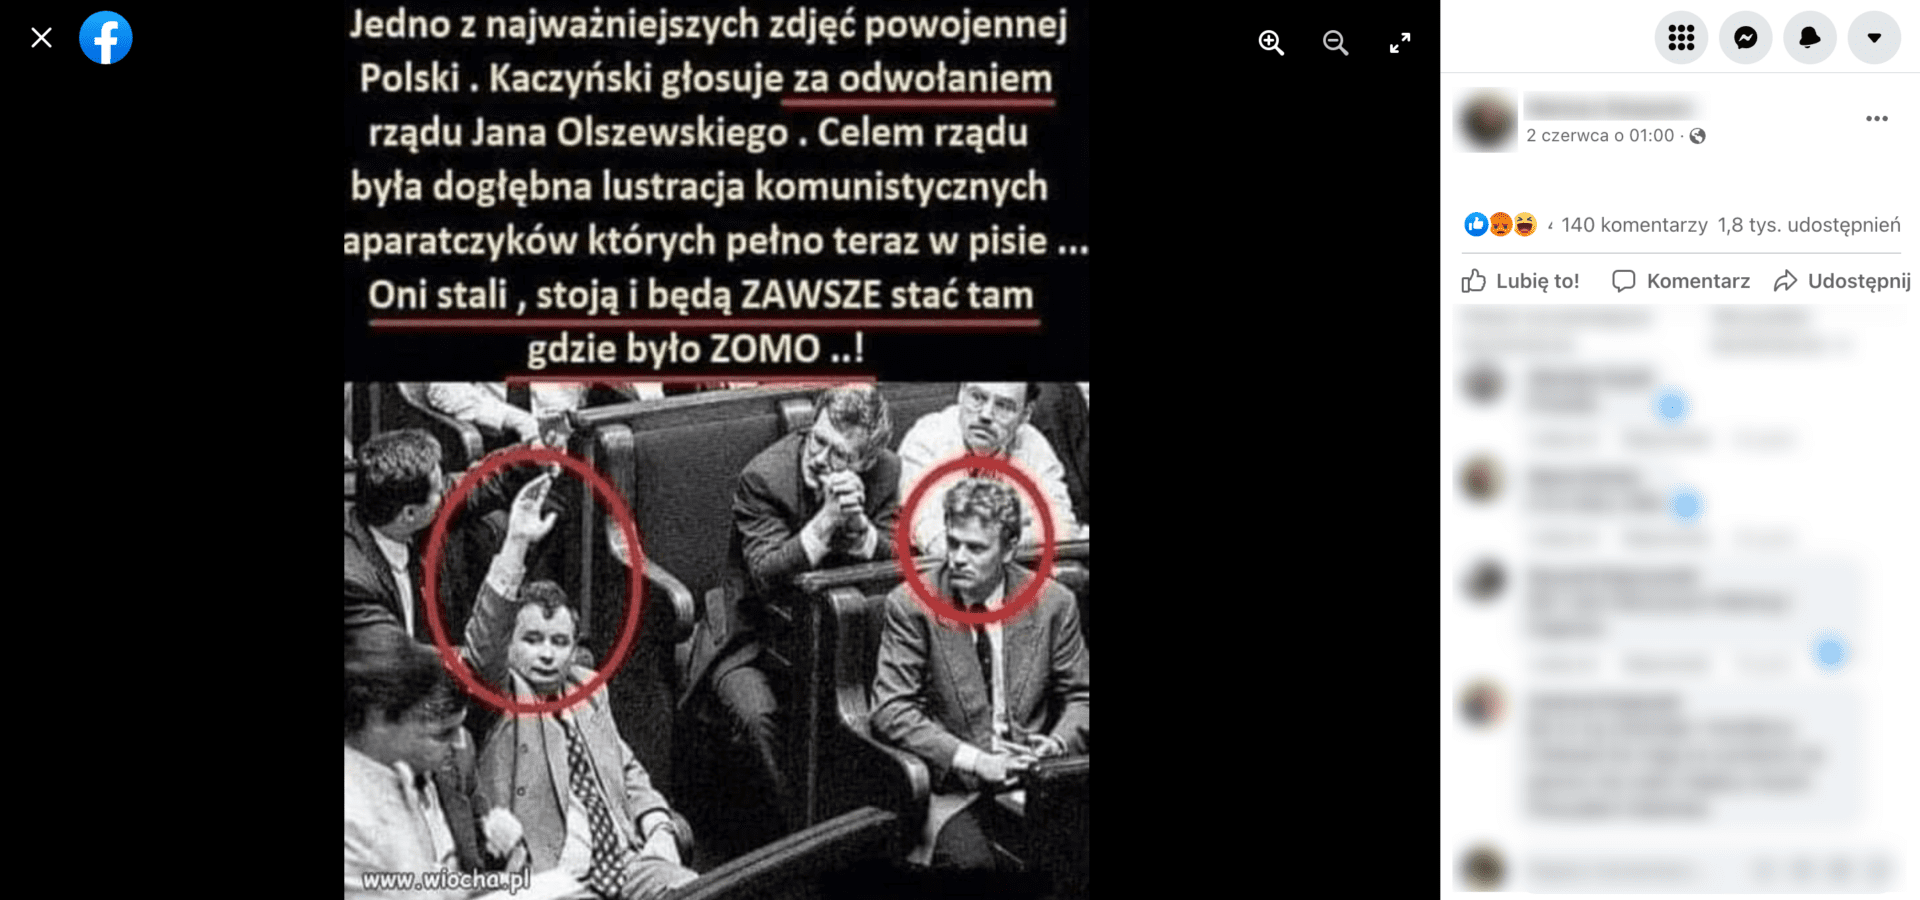 Zrzut ekranu z posta na Facebooku, w którym stwierdzono, że Jarosław Kaczyński głosował „za” odwołaniem rządu Jana Olszewskiego. Wpis zdobył 350 reakcji, 140 komentarzy i ponad 1,8 tys. udostępnień.